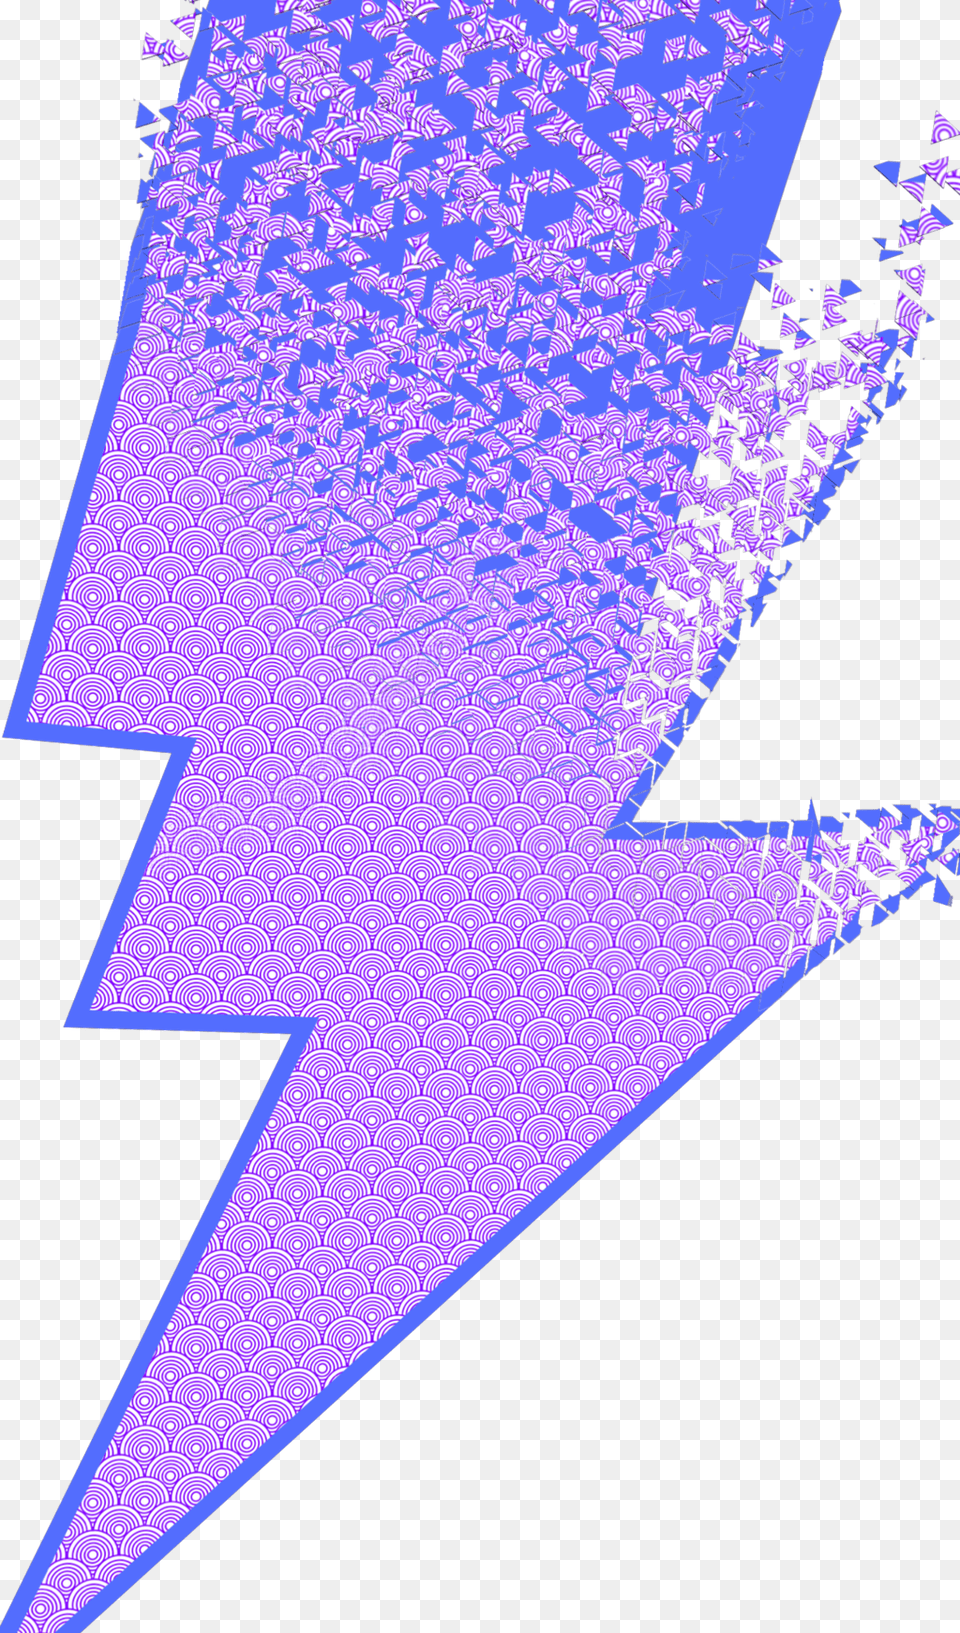 Lightning Freetoedit Cobalt Blue, Art, Graphics, Purple, Leaf Free Transparent Png